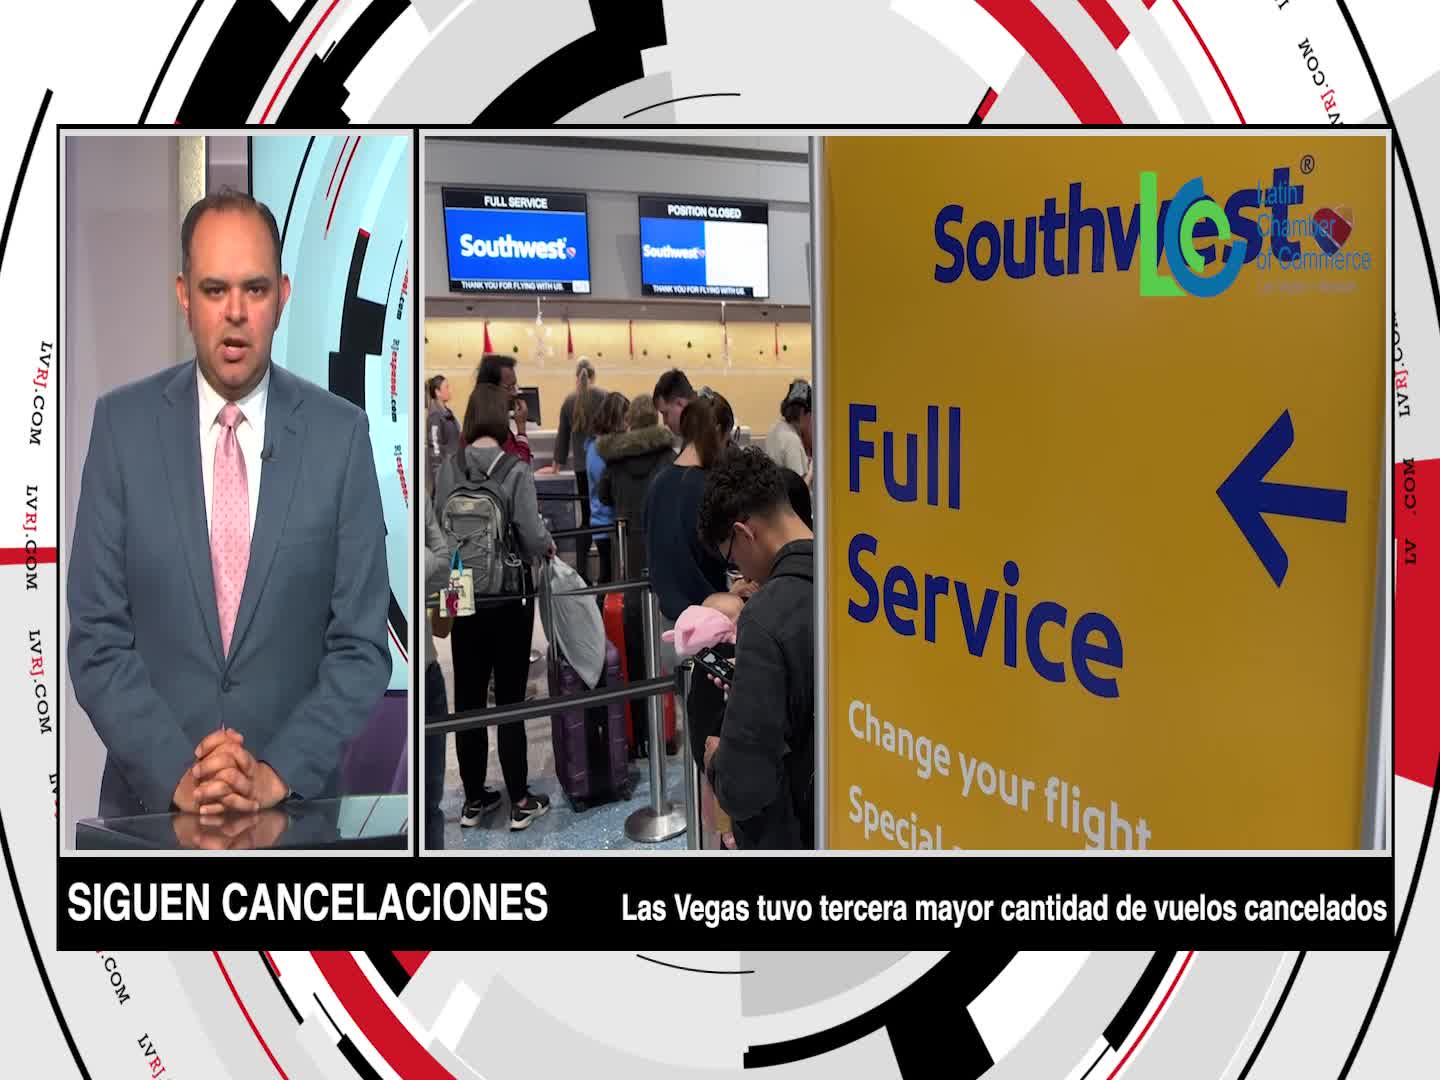 Economía: Continúan cancelaciones de vuelos en Las Vegas